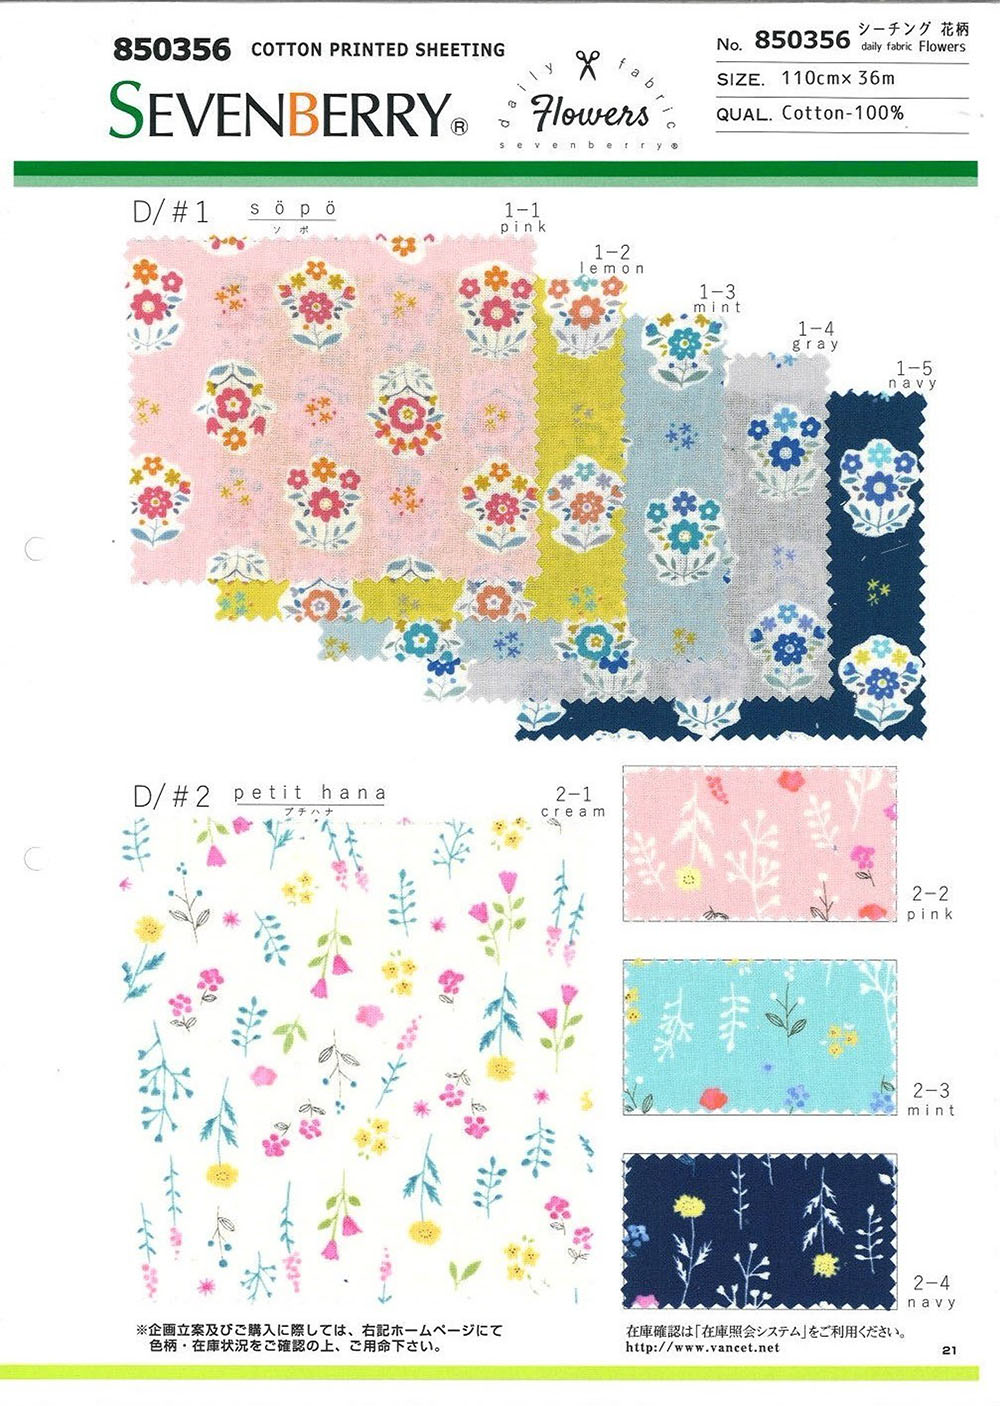 850356 광목 Daily Fabric Flowers[원단] VANCET